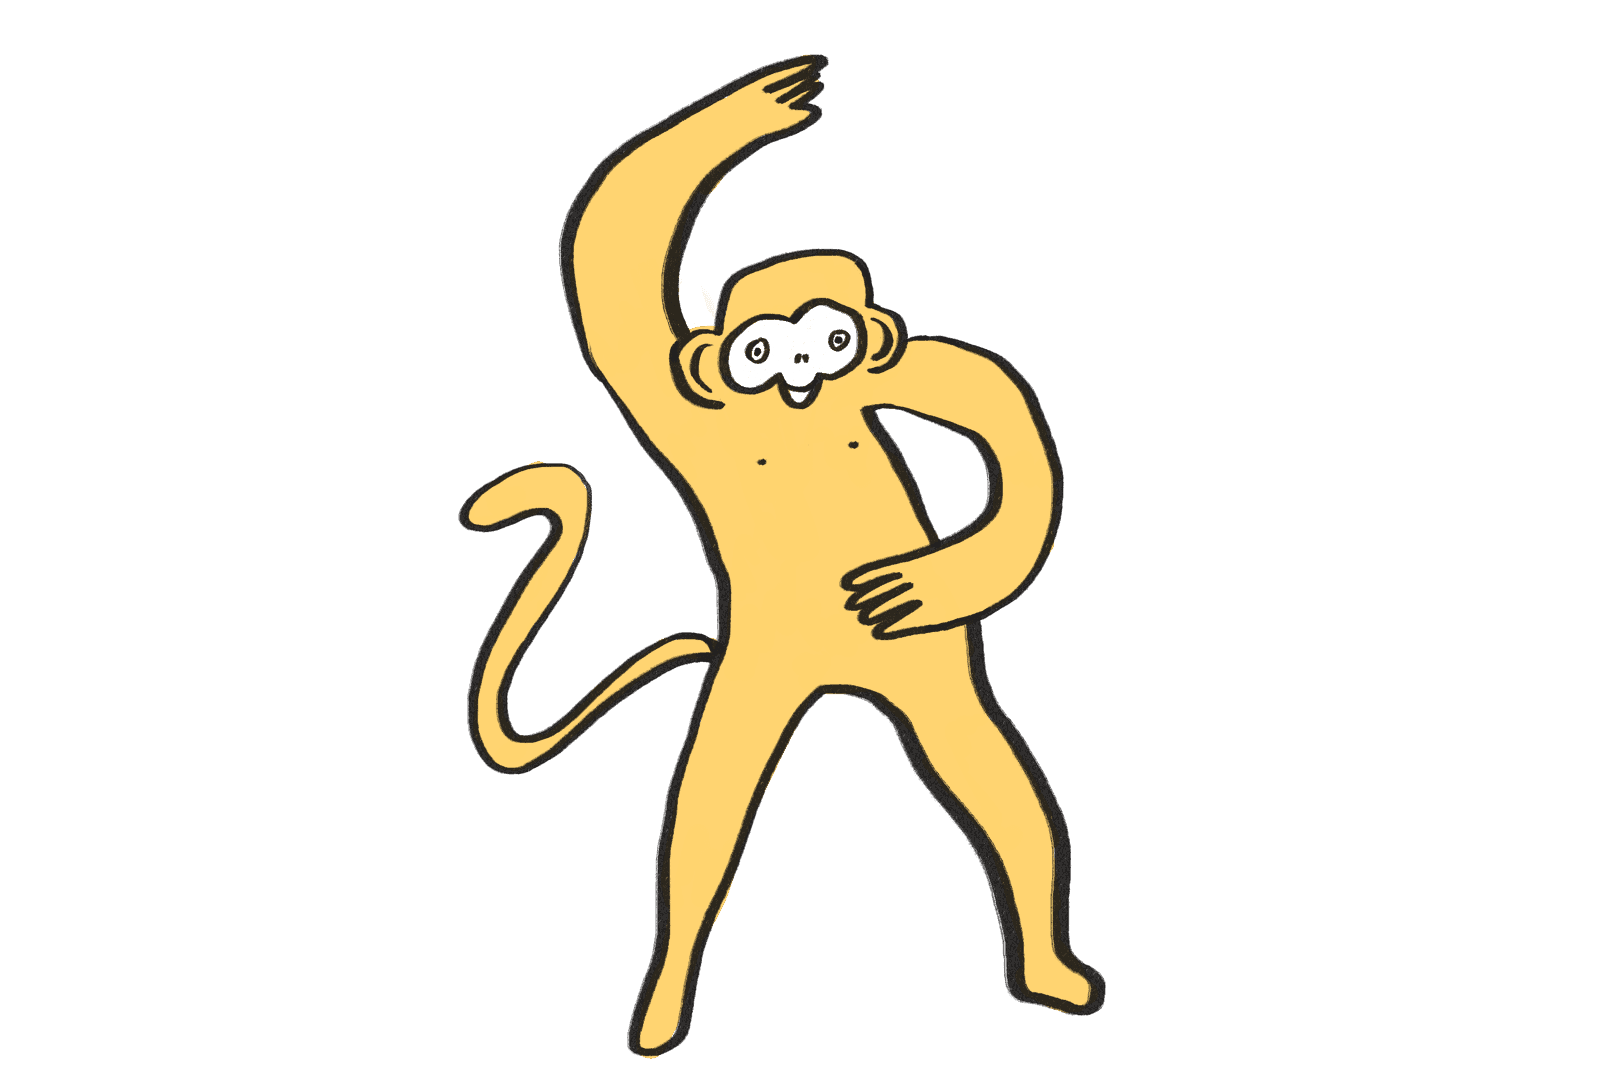 En illustration av en gul apa som dansar.